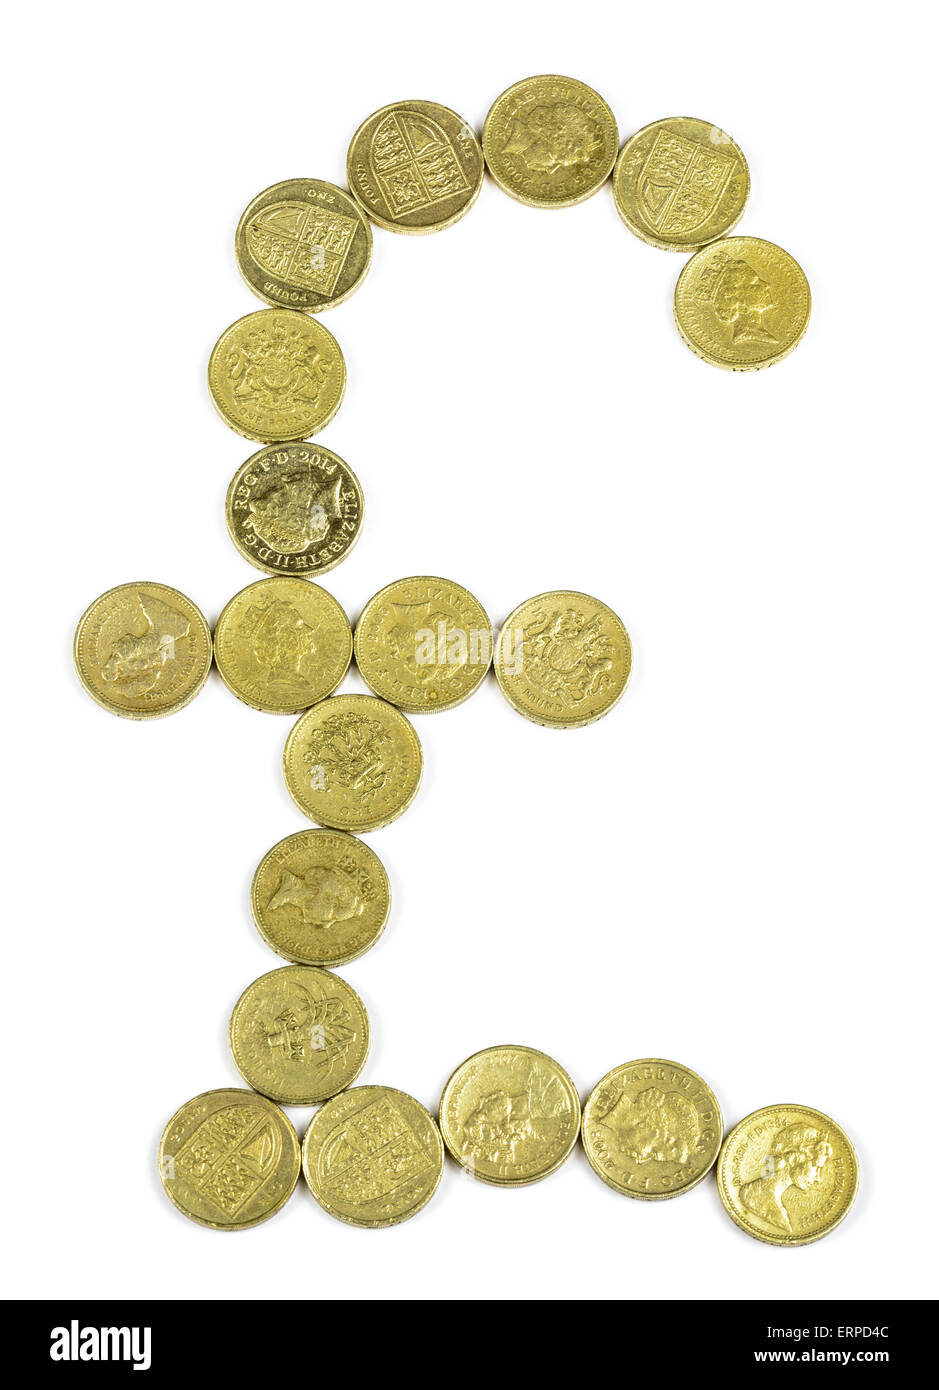 Zerstoßen Sie Zeichen von britischen Pfund-Münzen auf einem weißen Hintergrund. Stockfoto